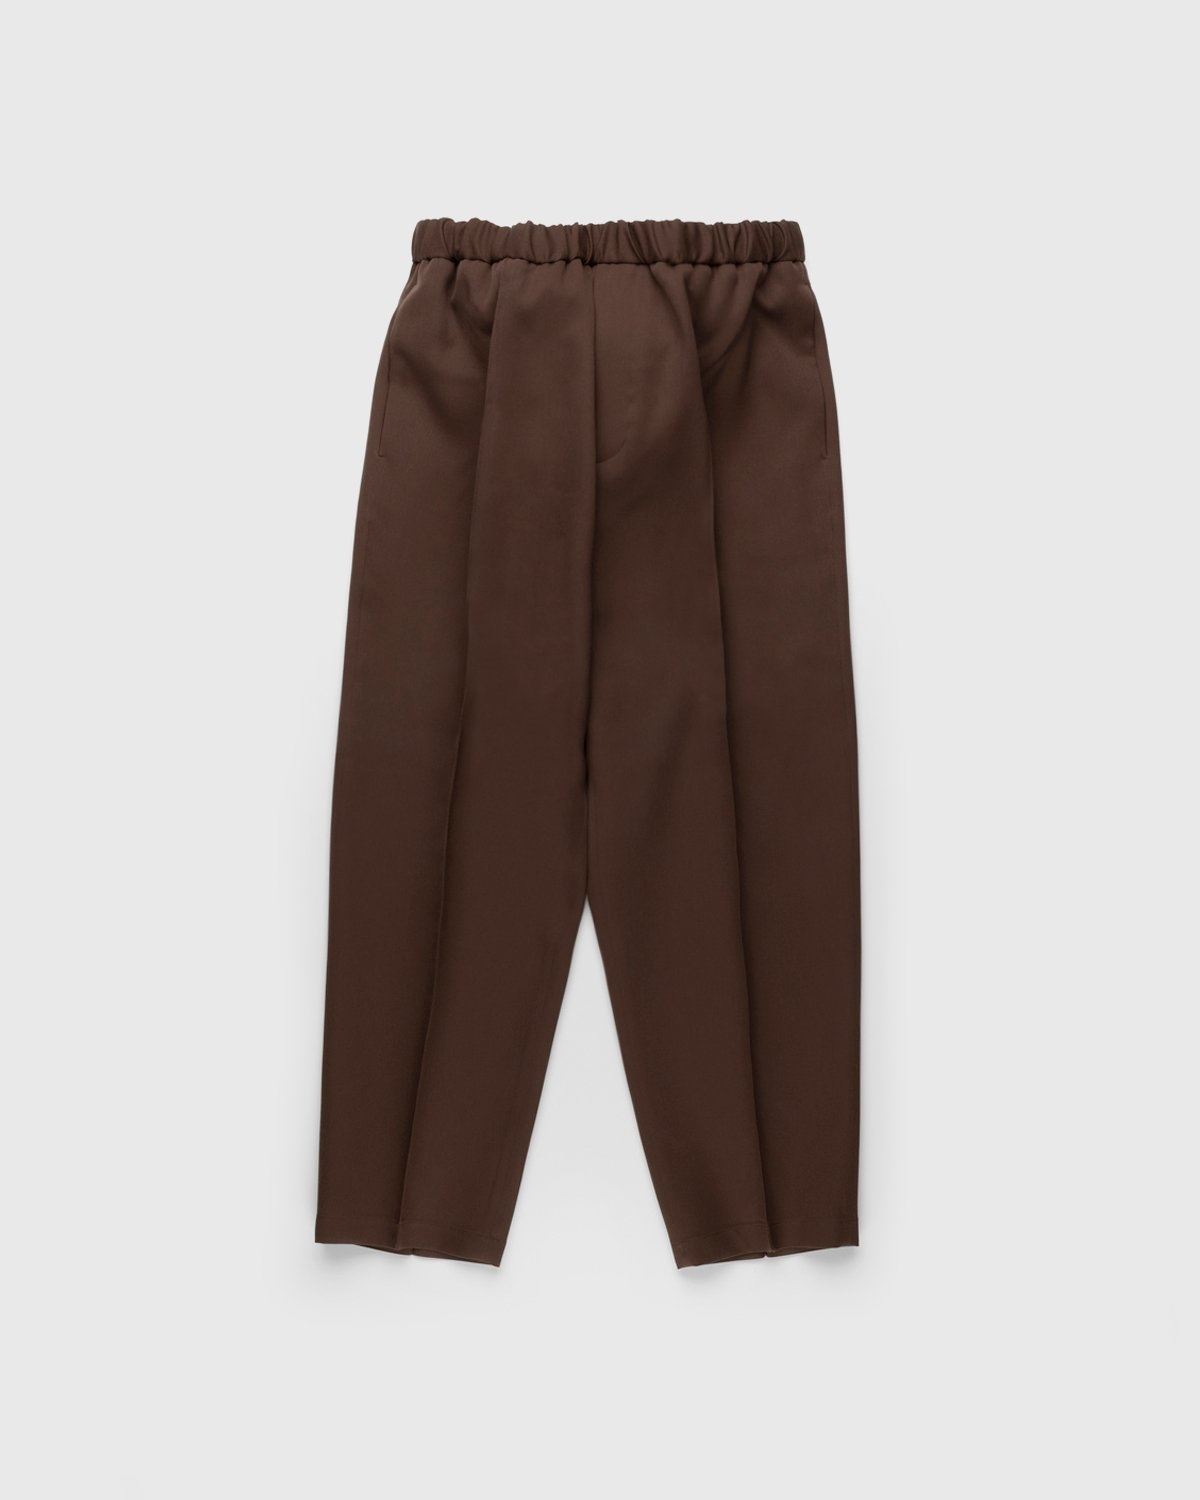 Jil Sander – Wool Trousers Medium Brown - Pants - Brown - Image 1